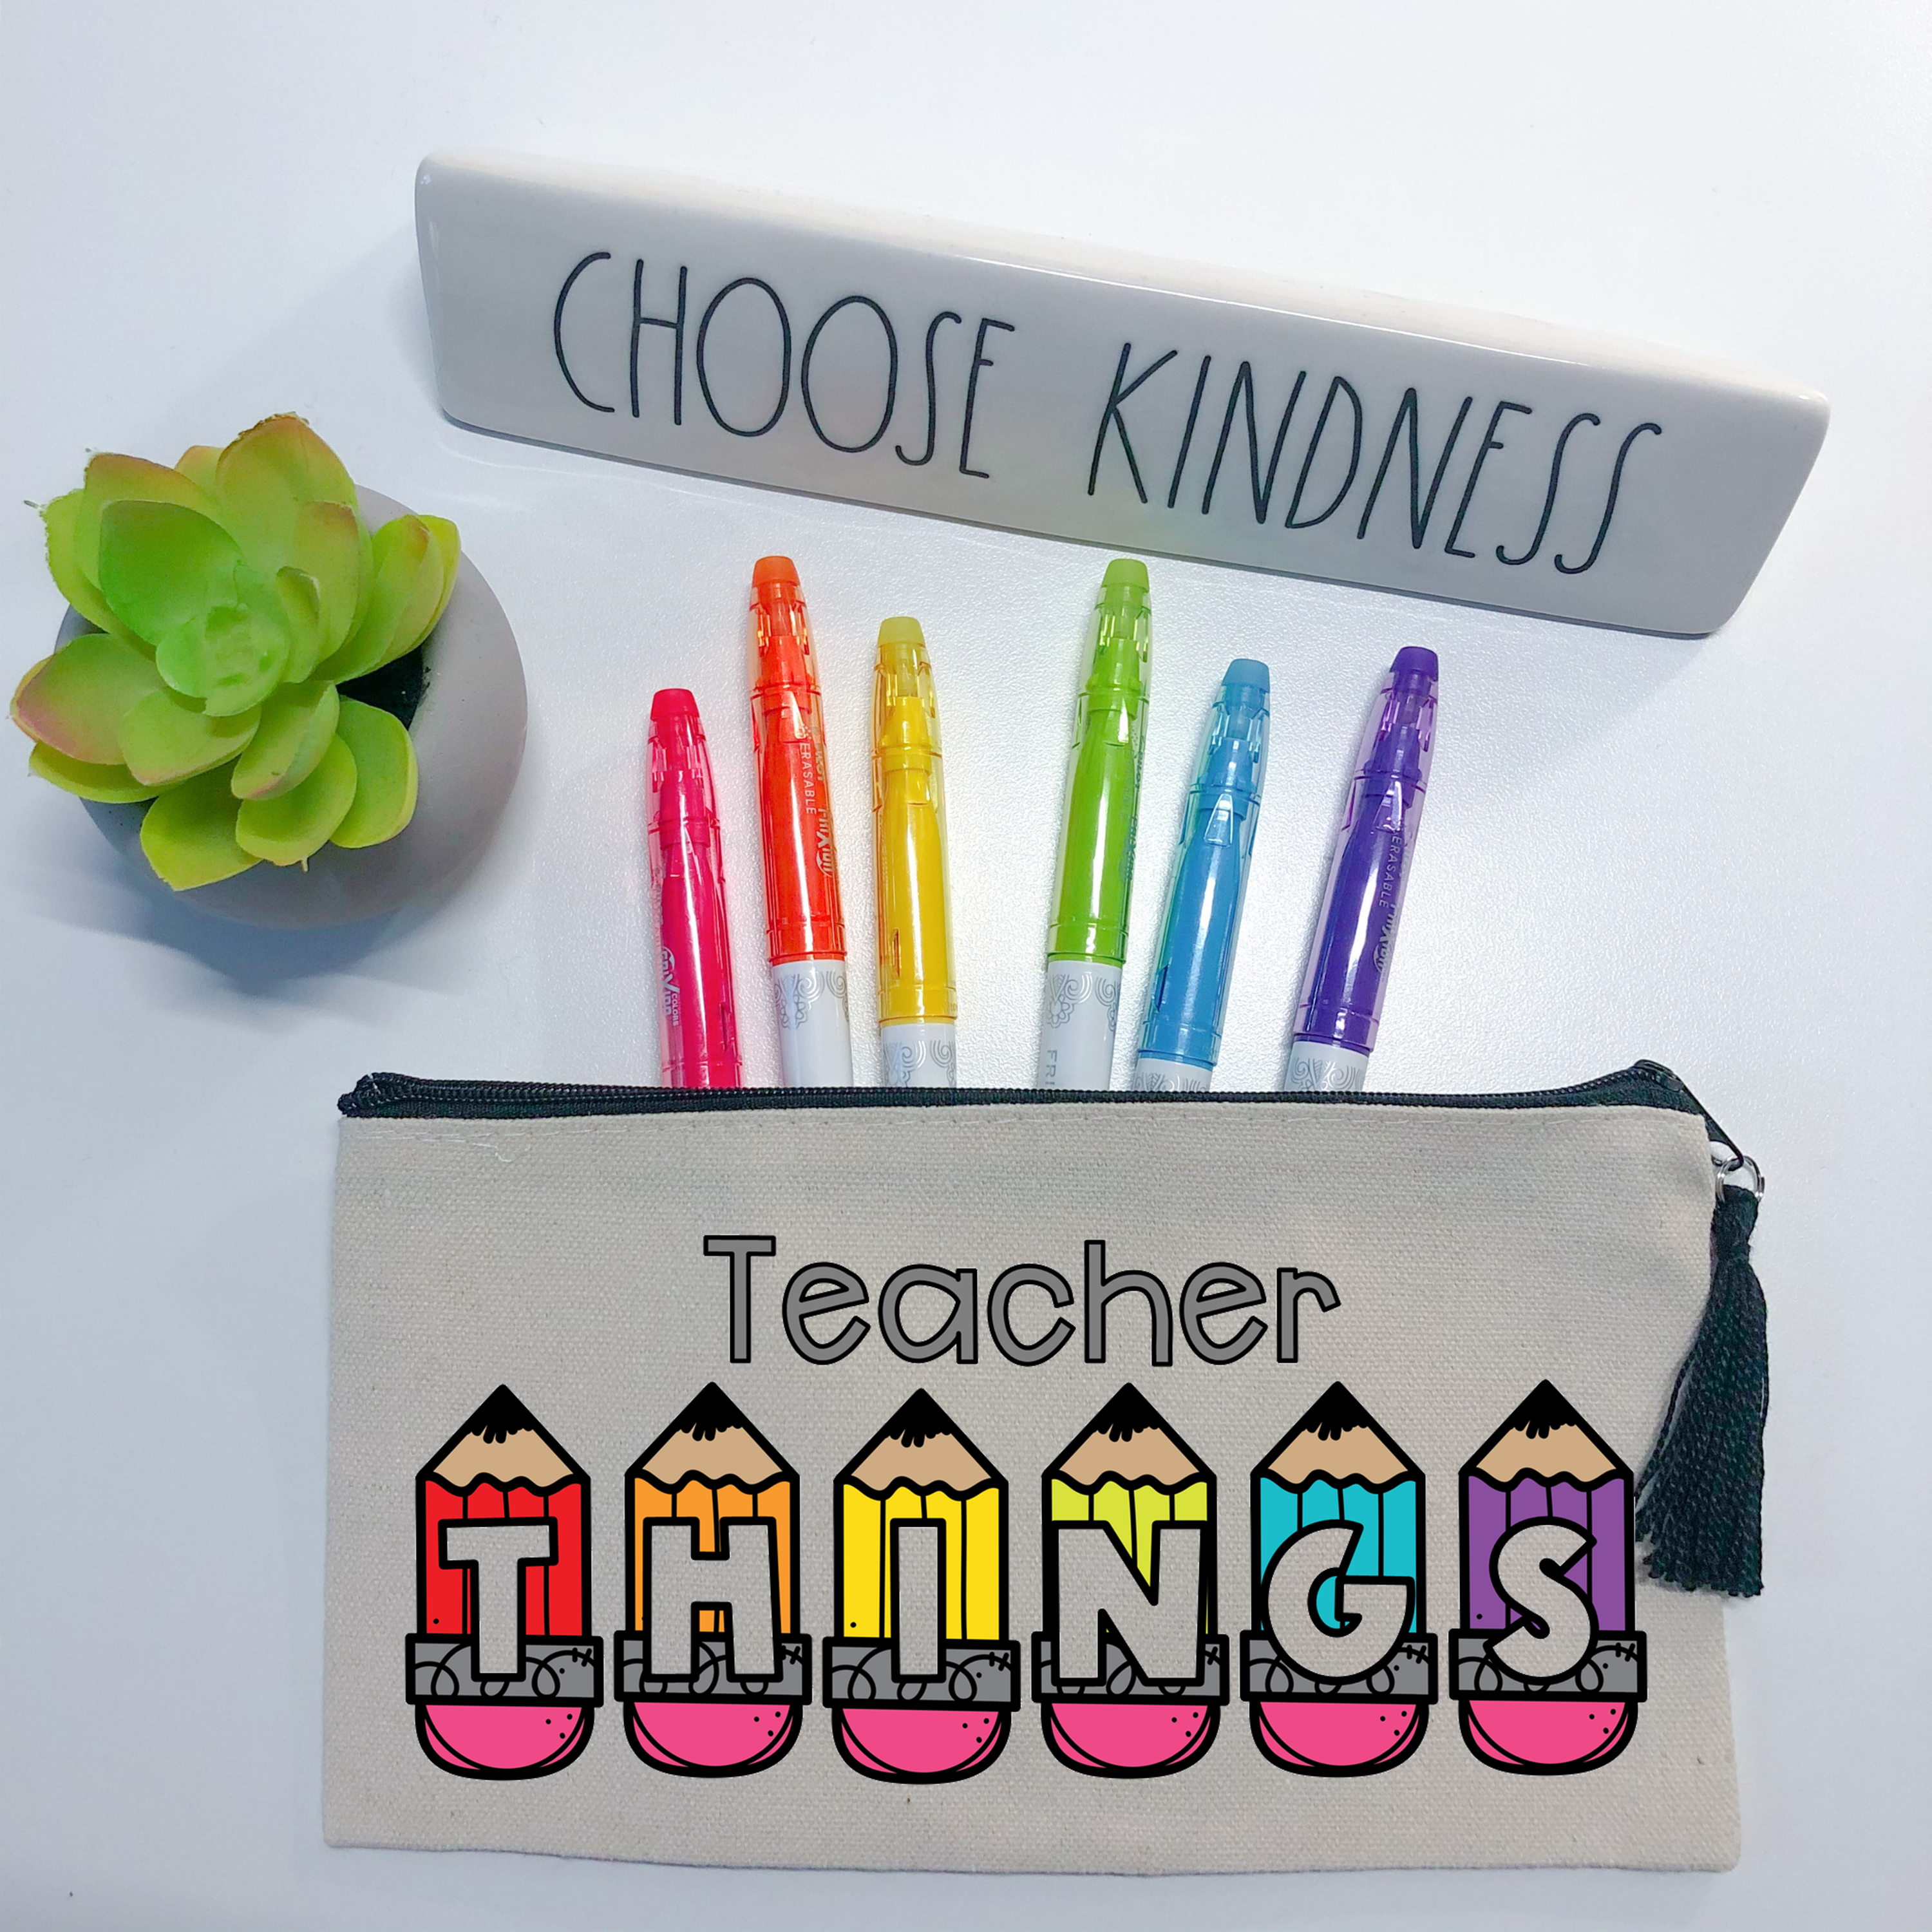 Best Teacher Ever Music art science Teacher Pencil Pouch Bag